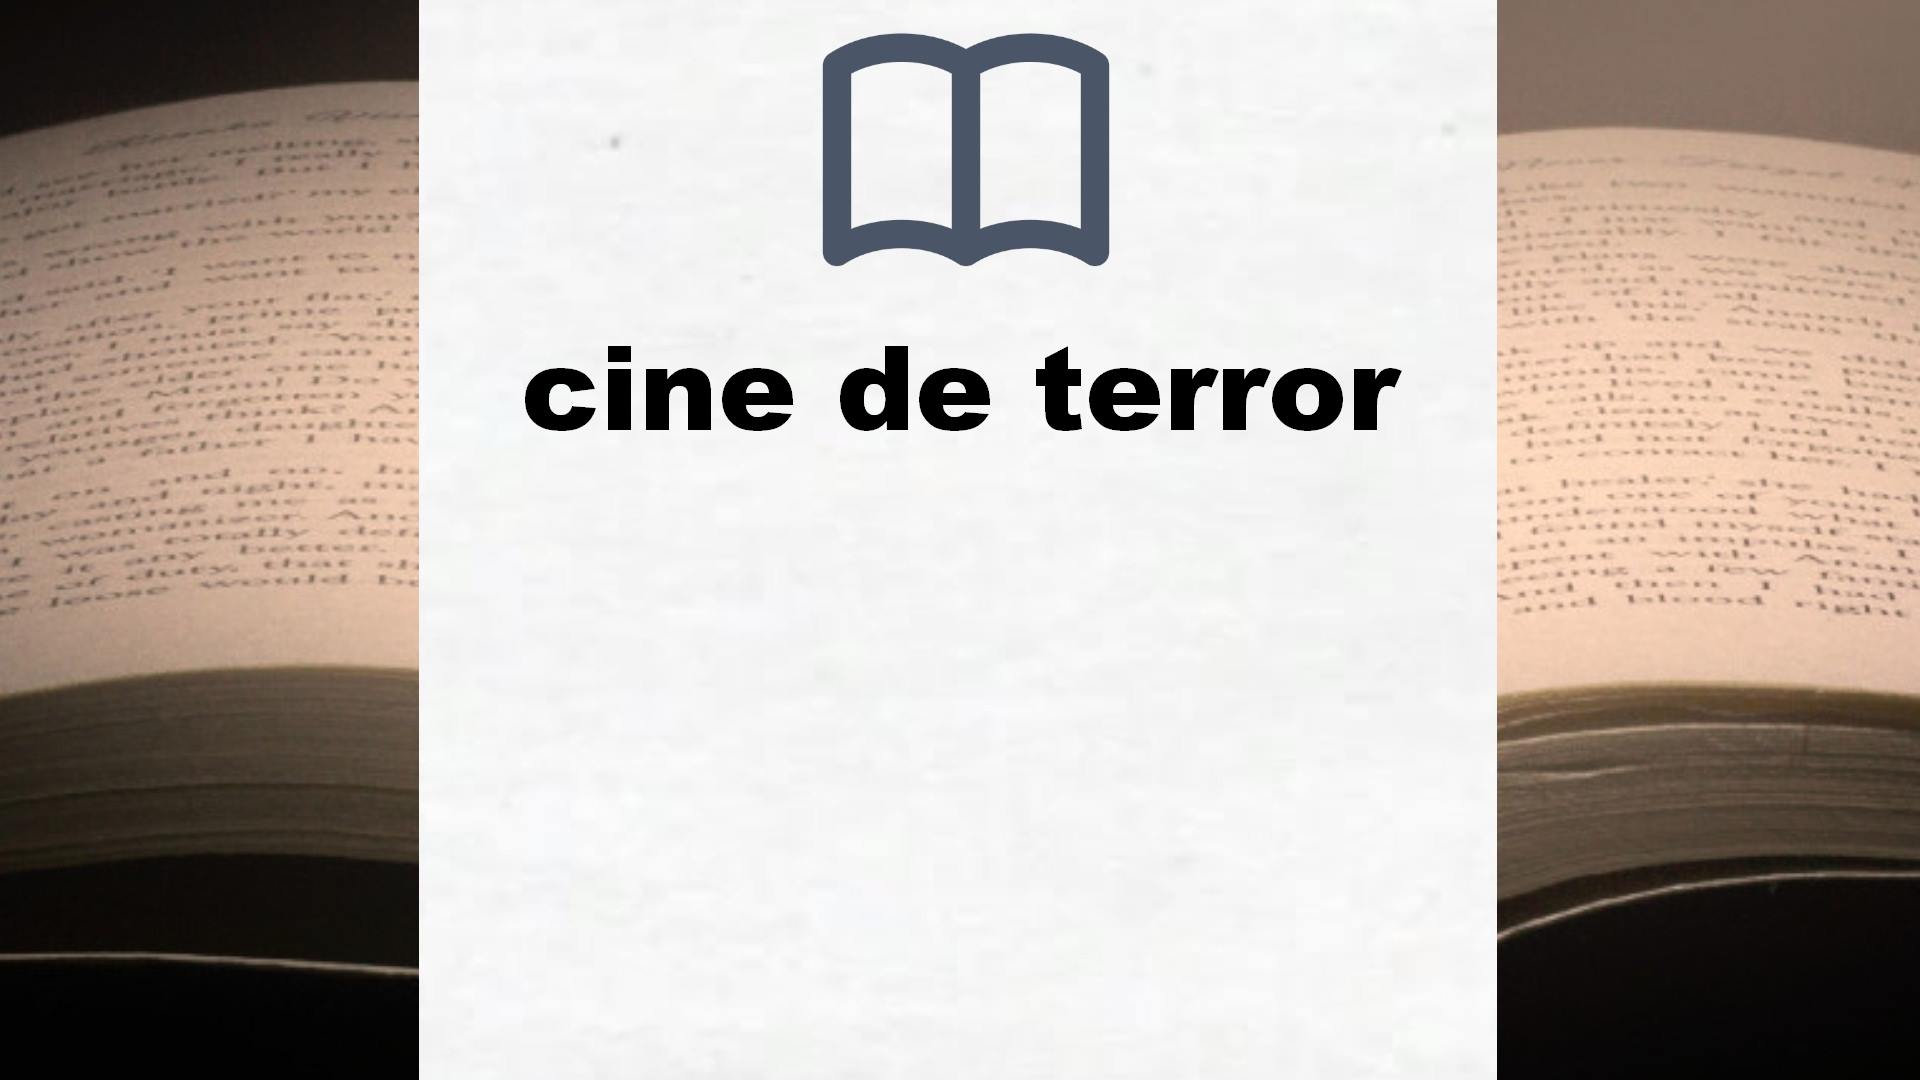 Libros sobre cine de terror